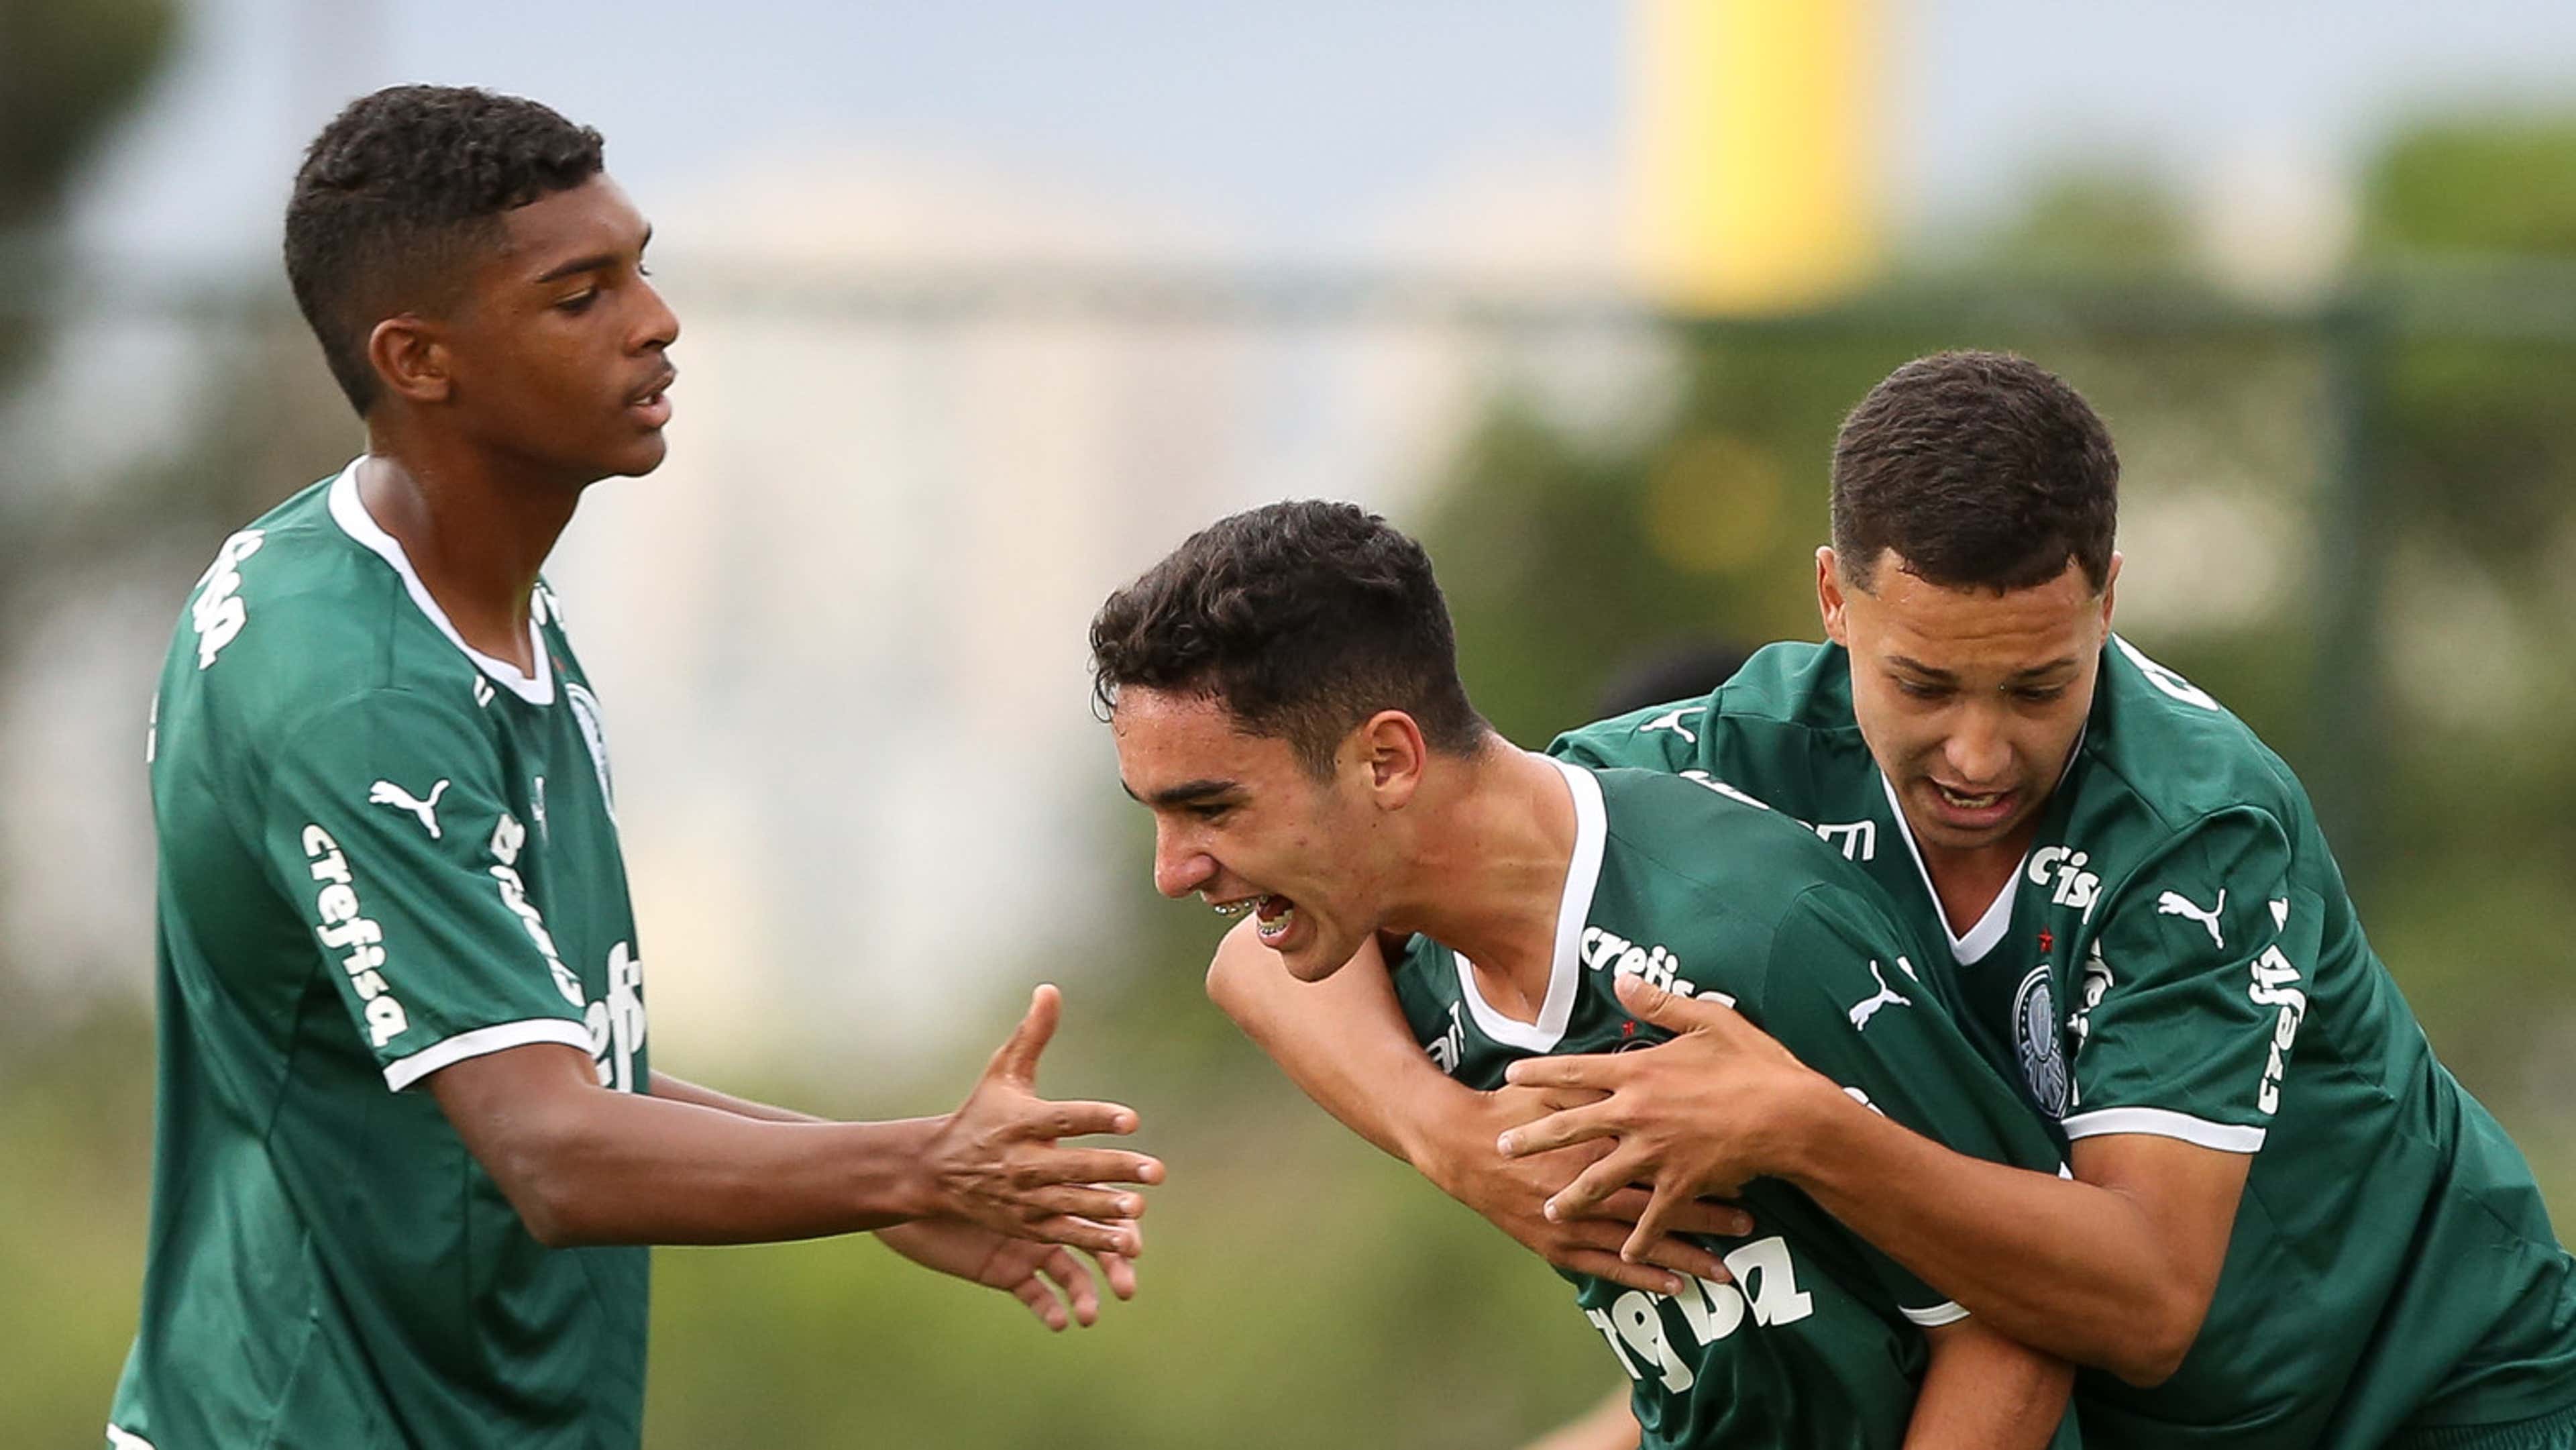 Canais ESPN mostram jogos de Vasco, Santos e Corinthians sub-17 na Copa do  Brasil - ESPN